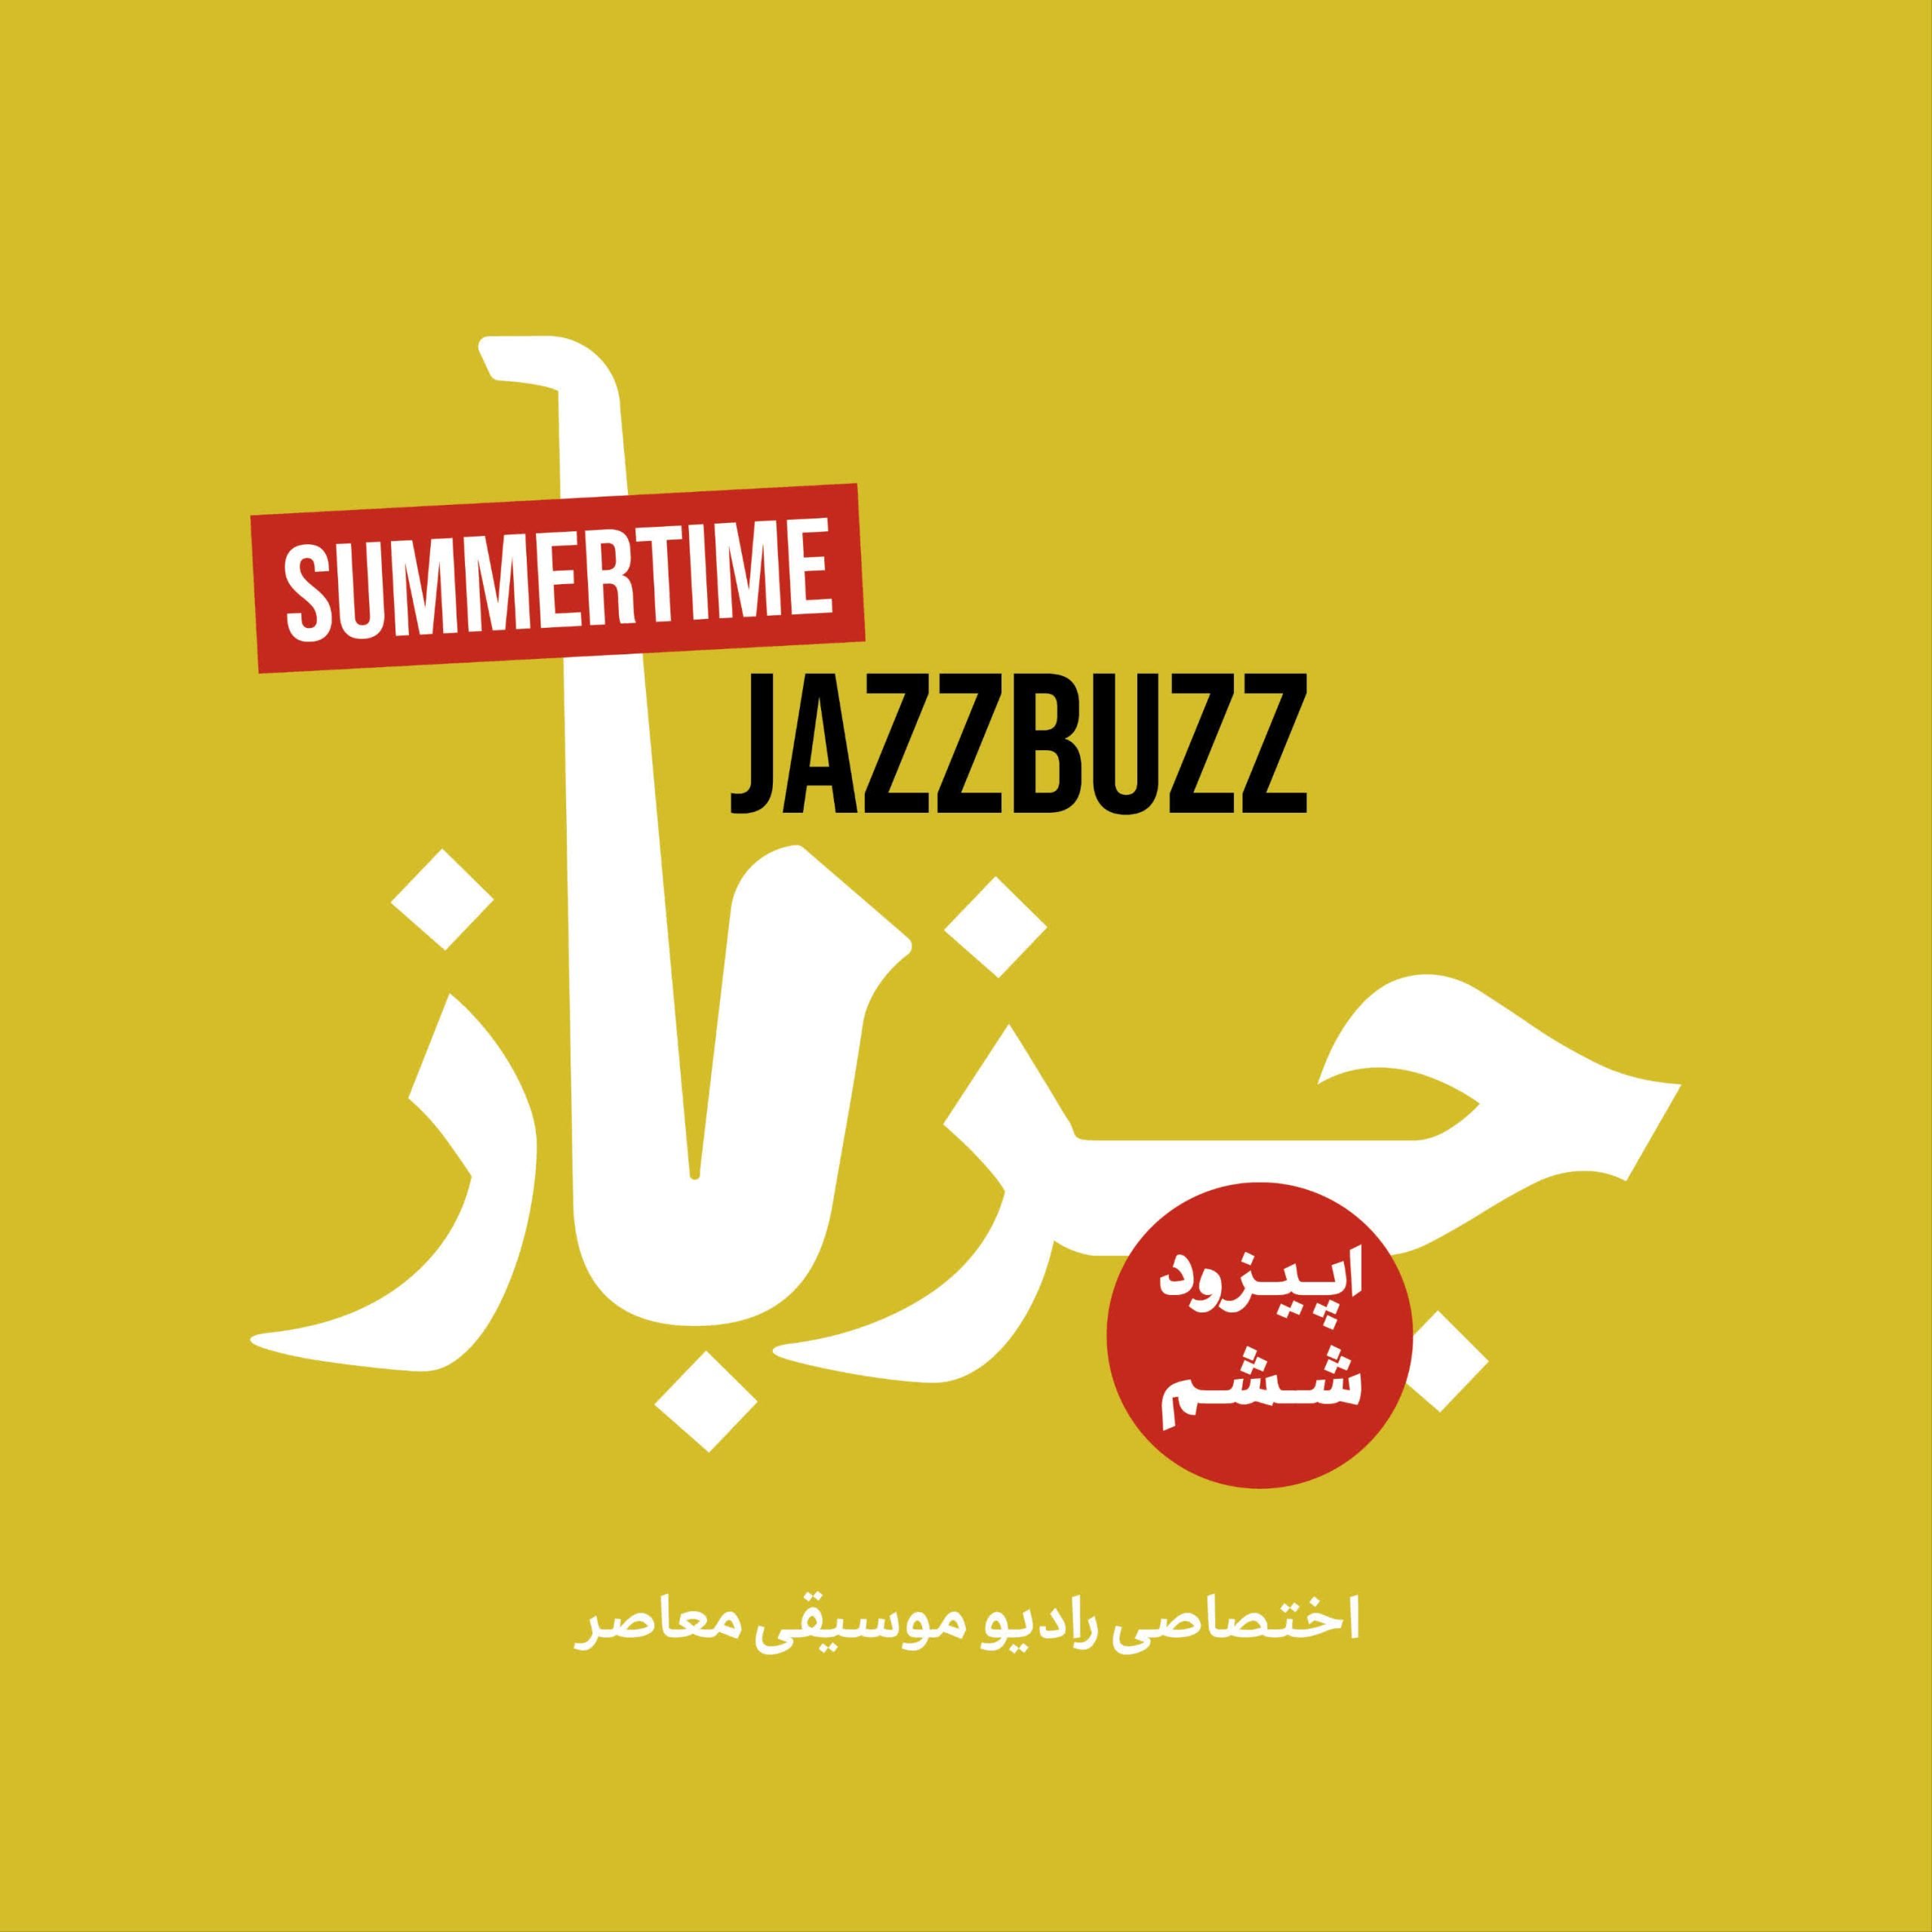 JazzBuzz 06: Summertime